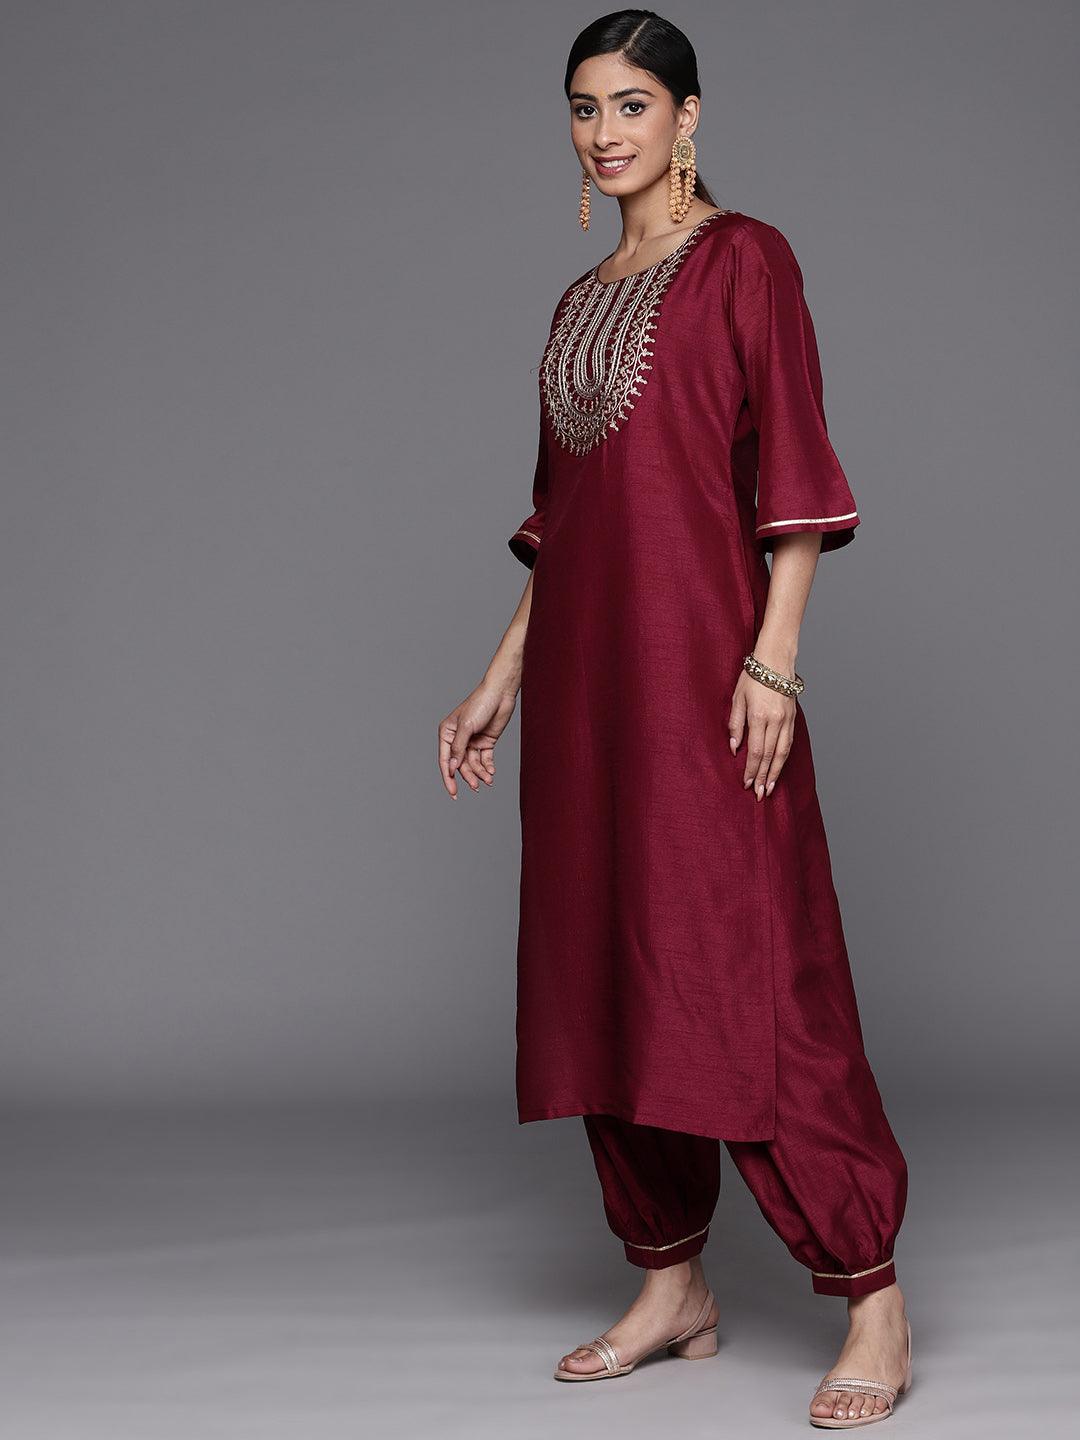 Burgundy Yoke Design Silk Blend Straight Kurta With Salwar & Dupatta